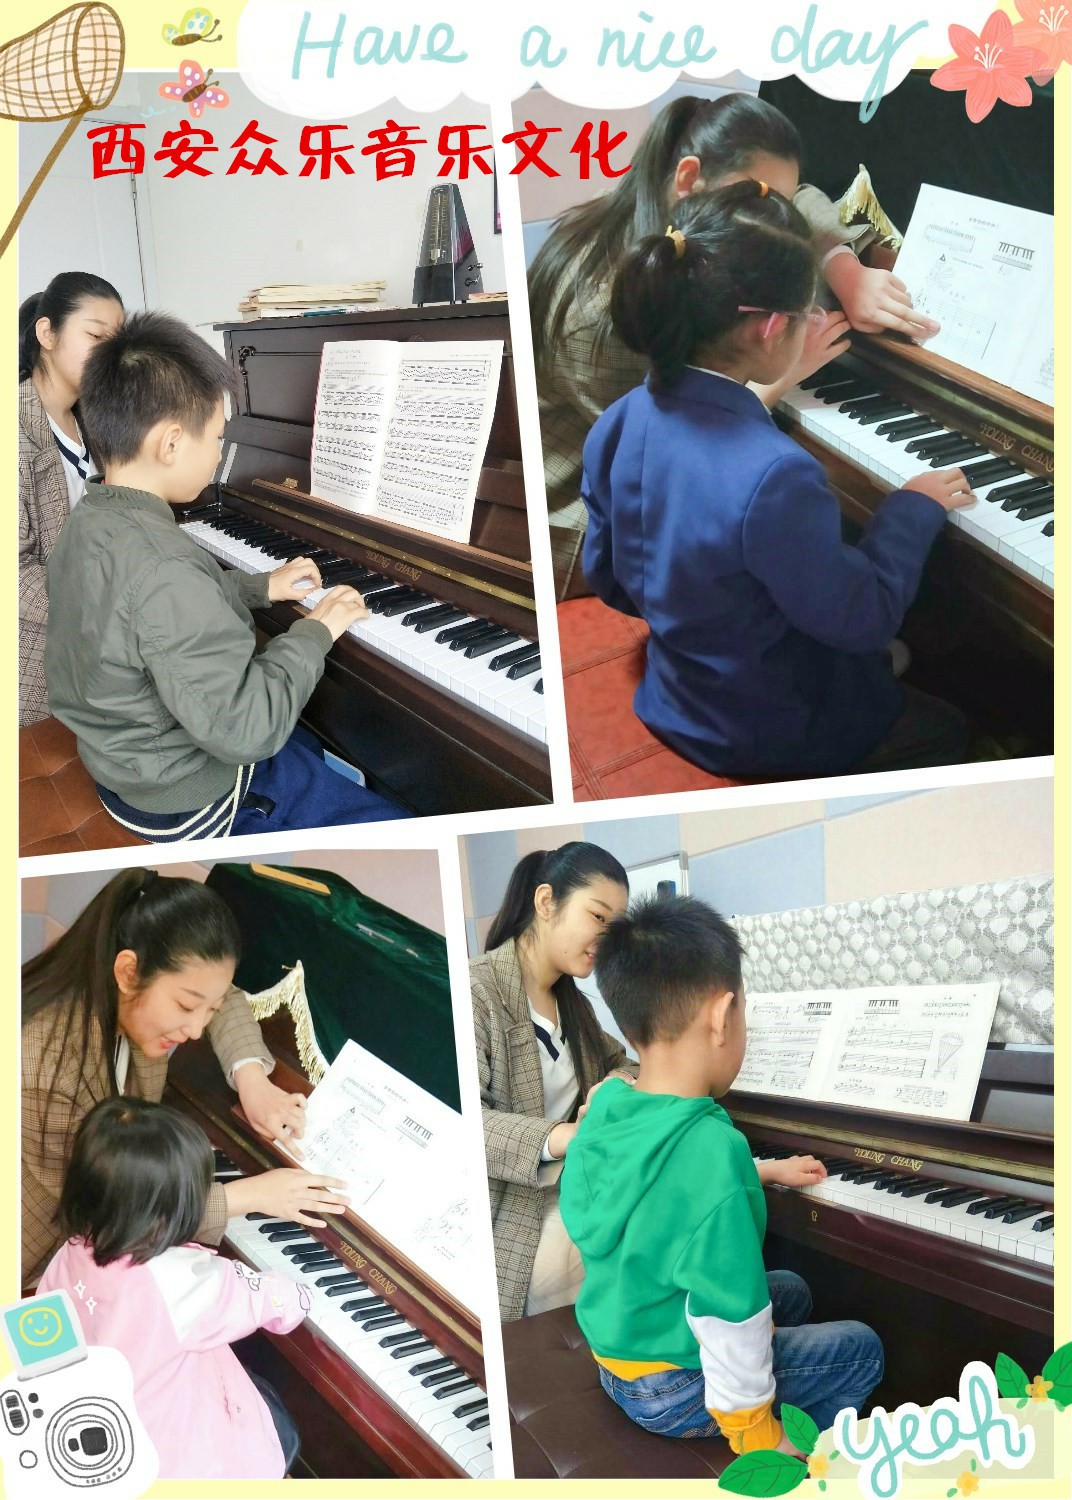 孩子几岁学钢琴比较好北郊专业钢琴培训班的图片